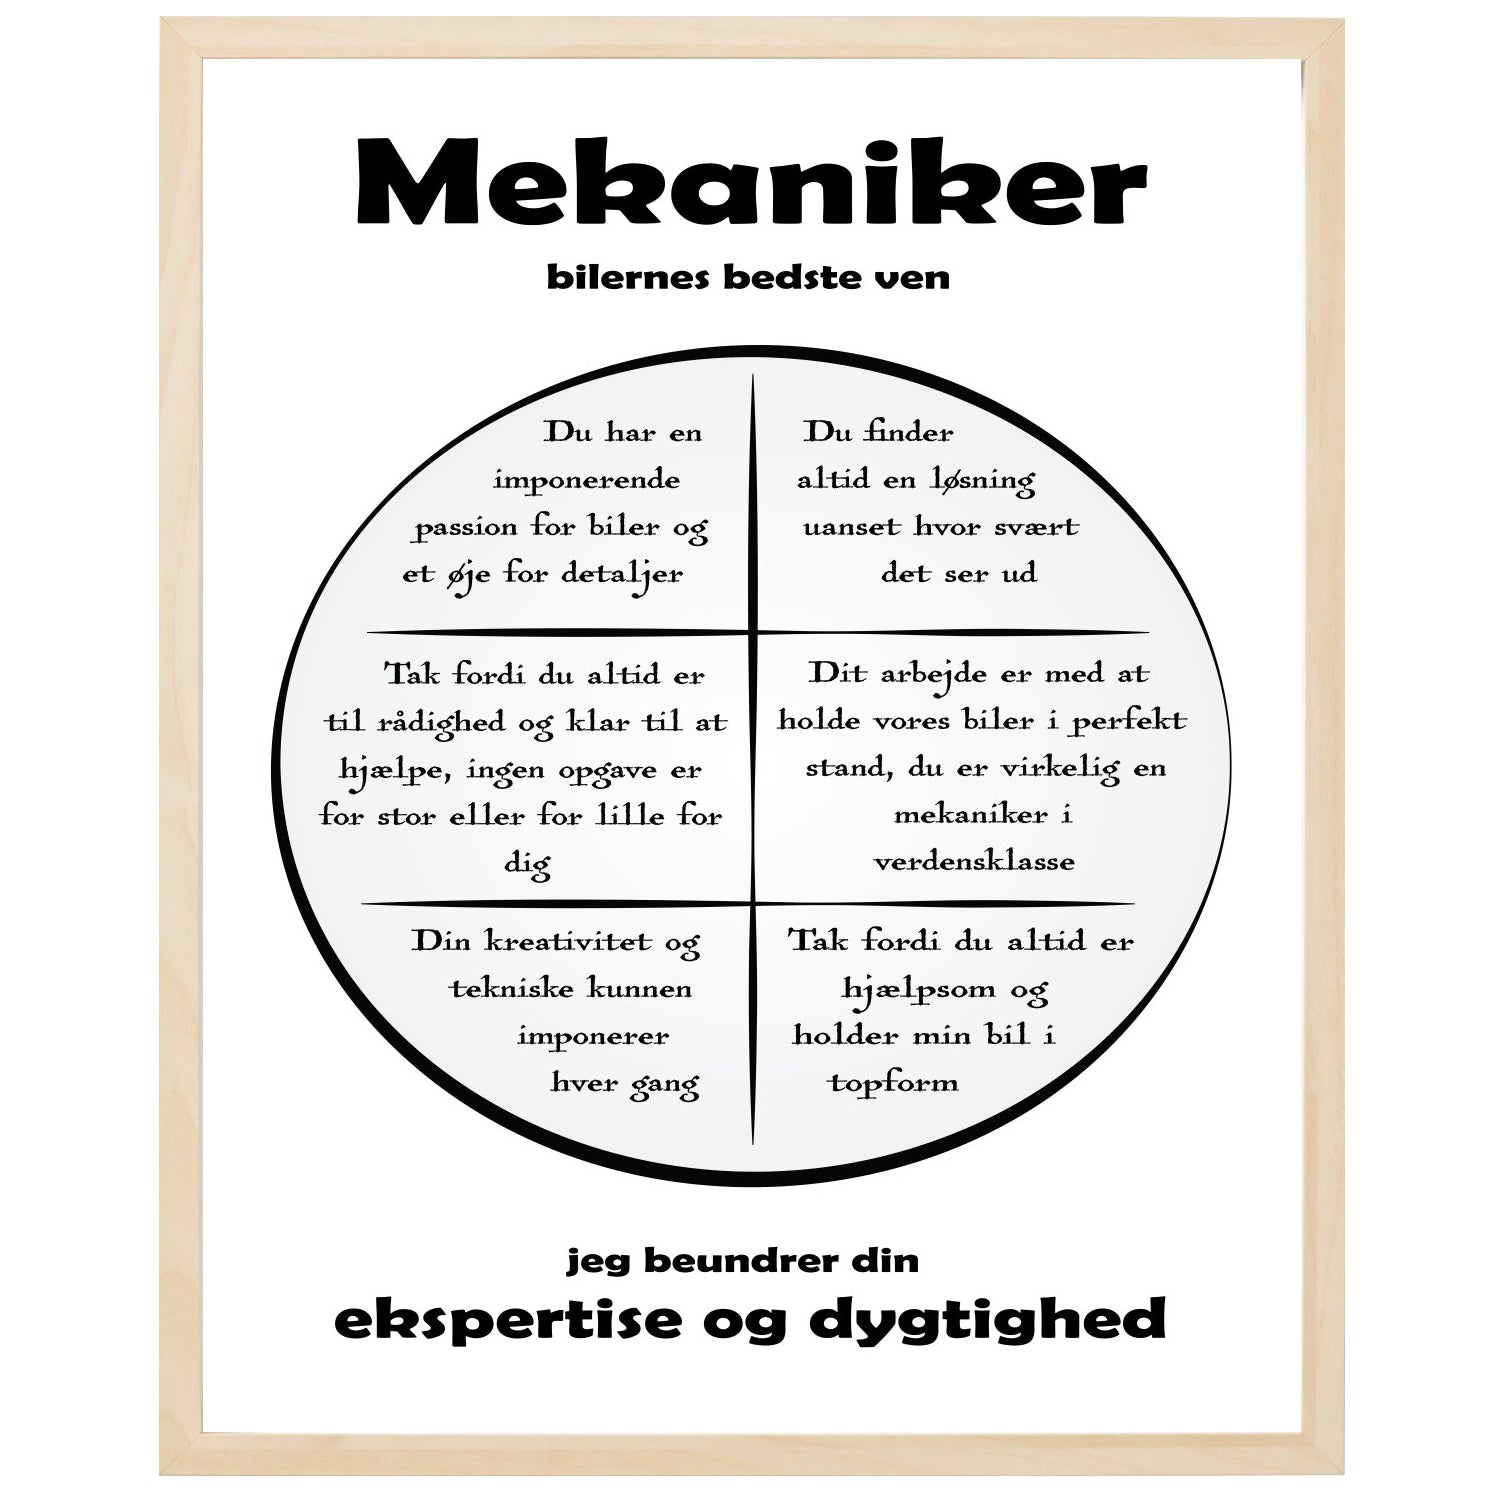 En plakat med overskriften Mekaniker, en rustik cirkel og indeni cirklen mange positive sætninger som beskriver en Mekaniker